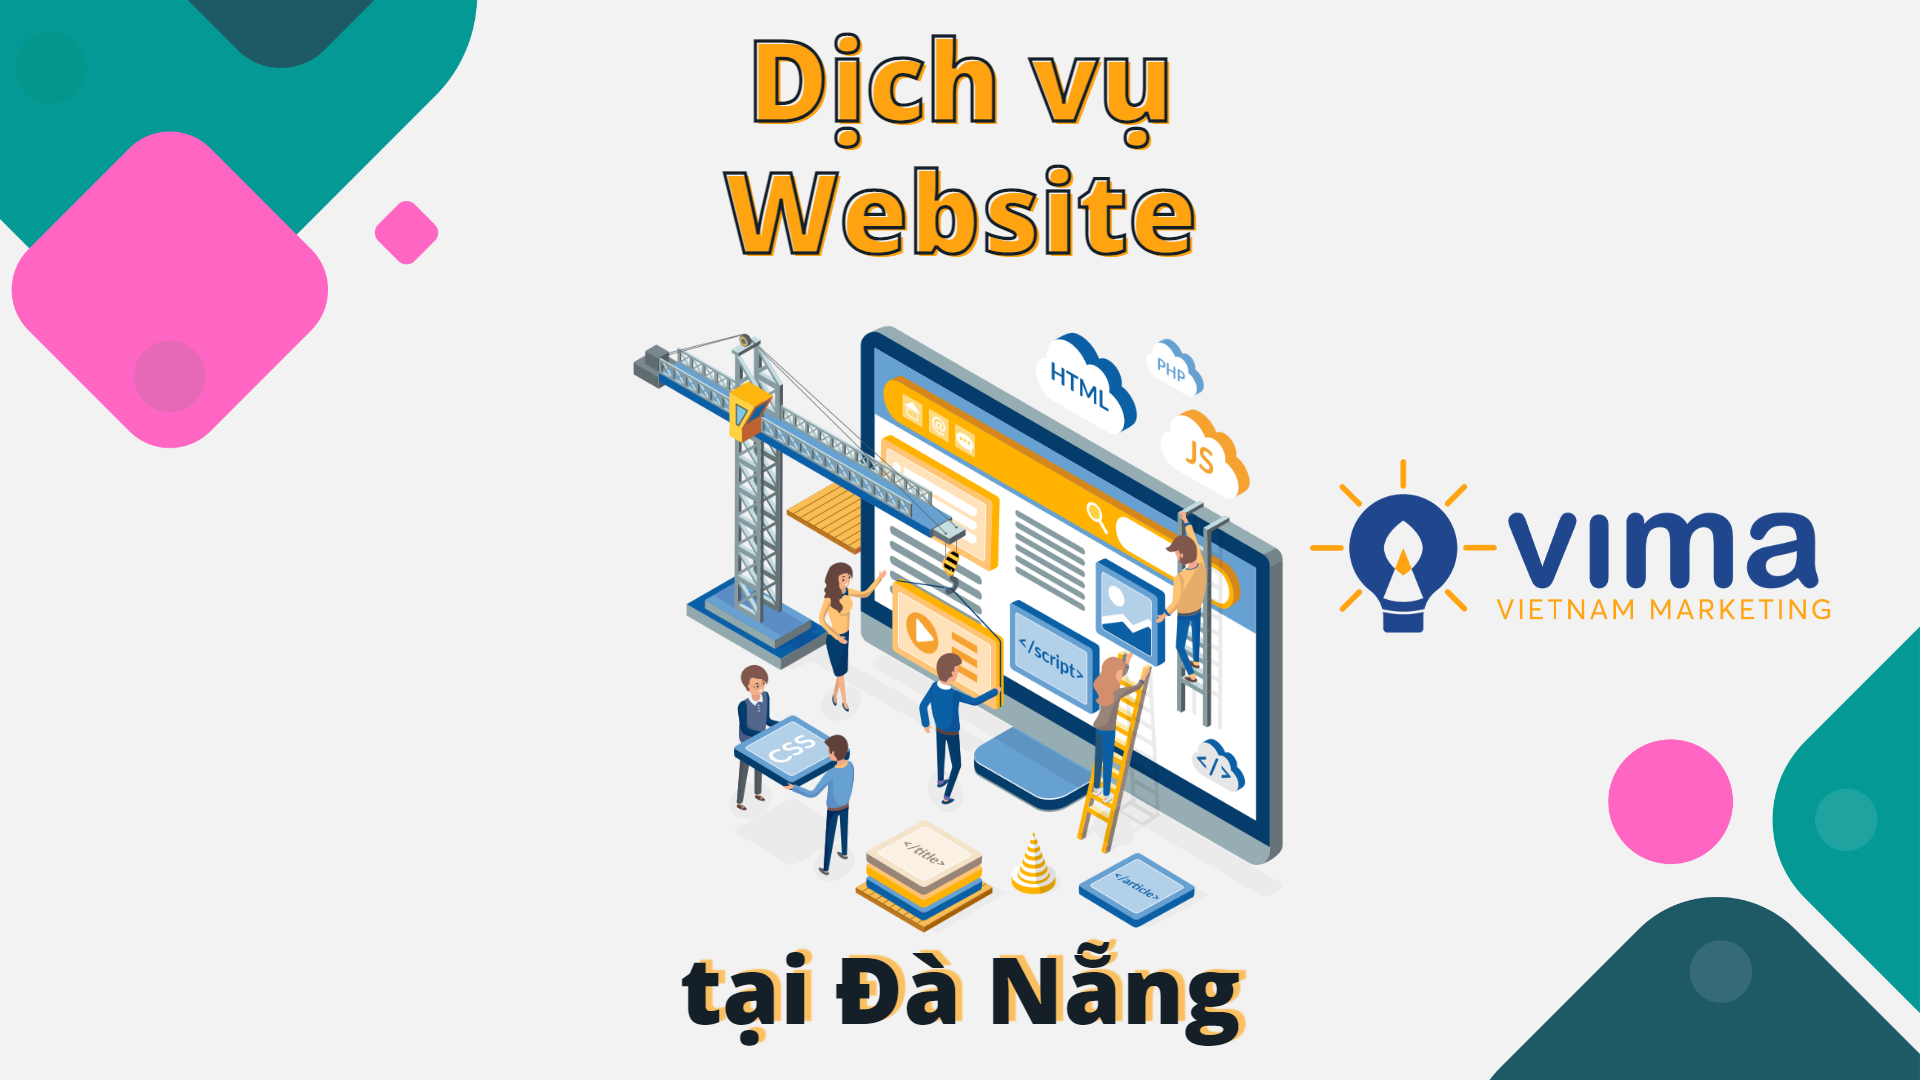 dich-vu-website-tai-da-nang.png